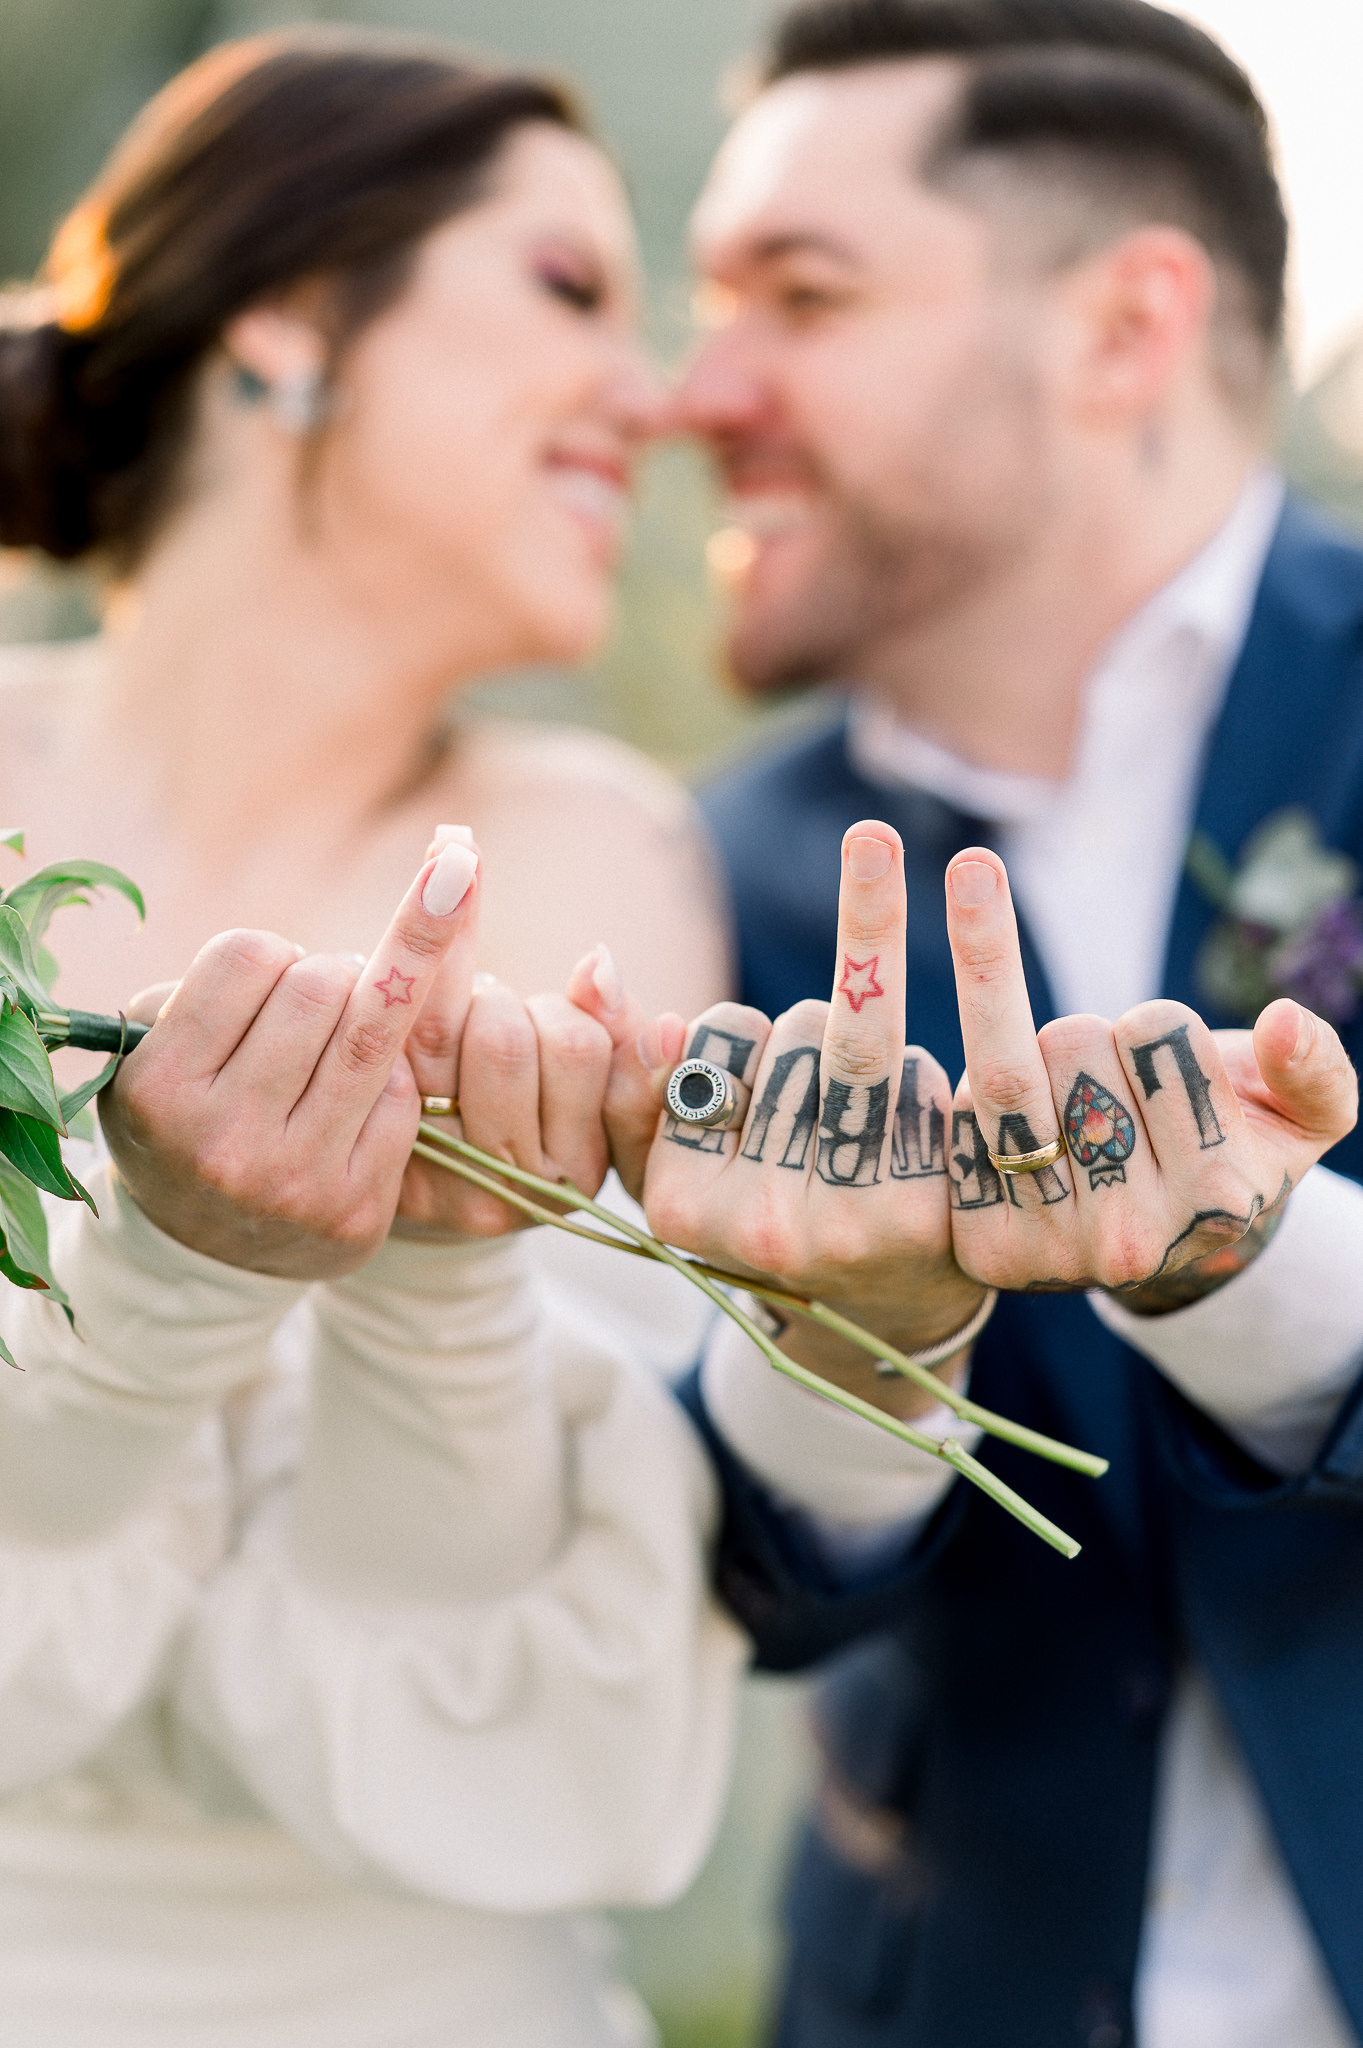 Micro wedding intimista numa tarde adorável e romântica em Itu